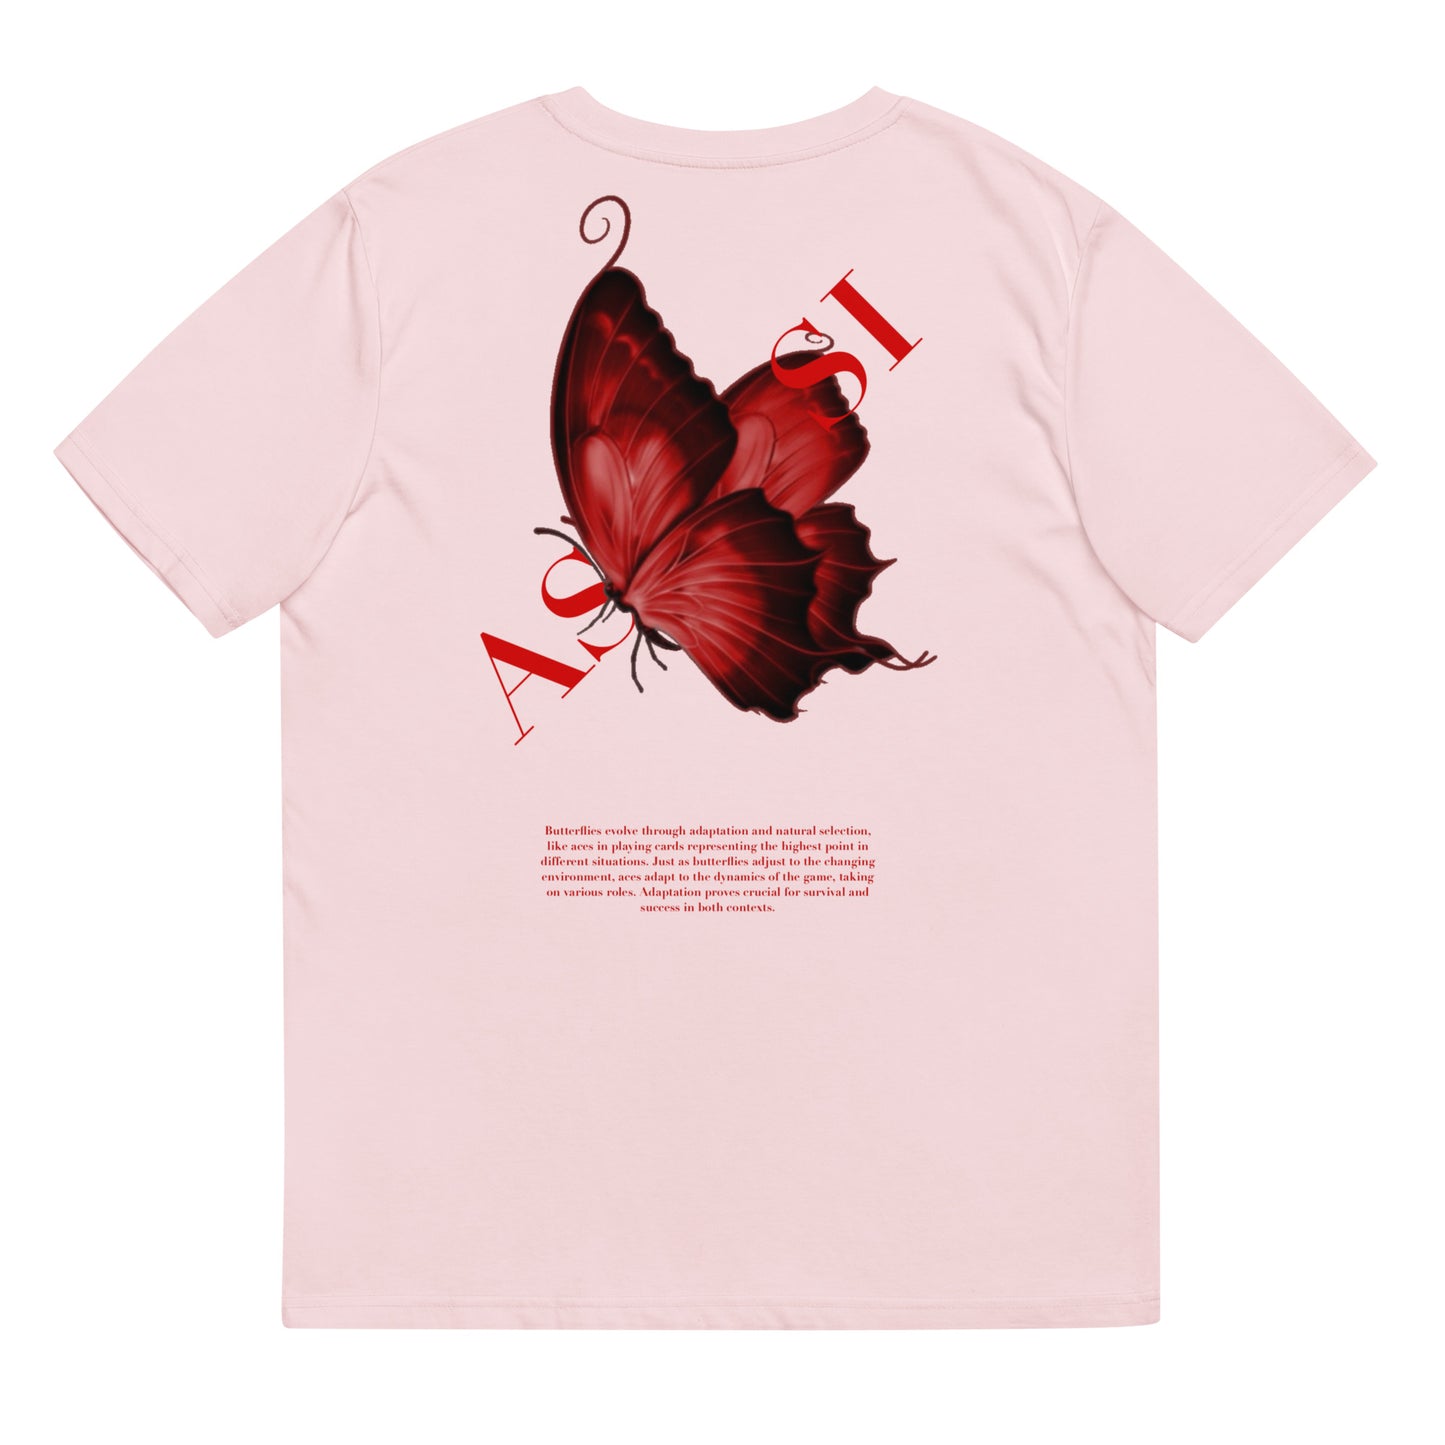 Assi butterfly unisex t-shirt